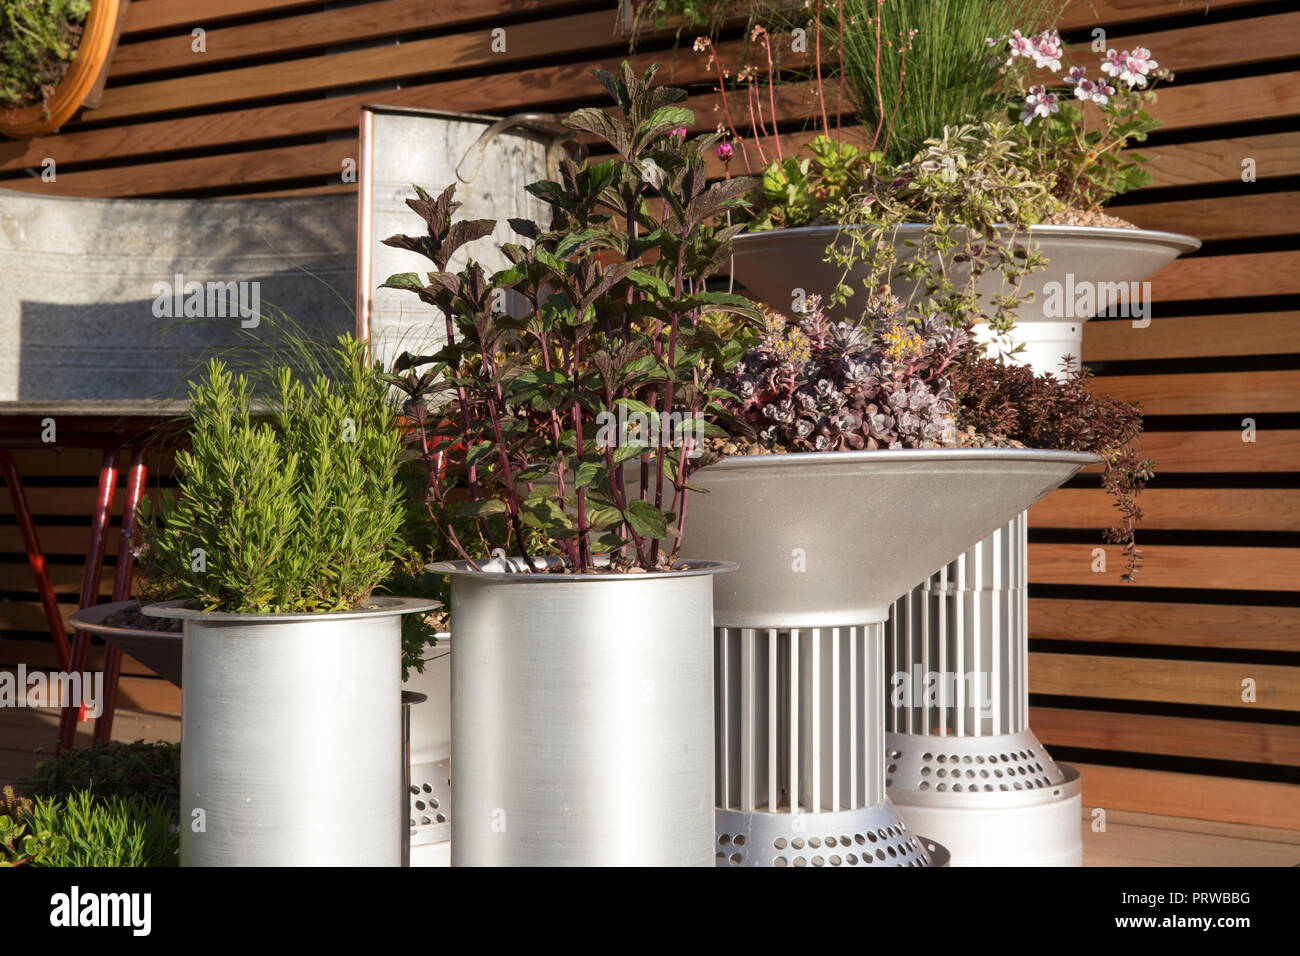 Kleiner, städtischer Balkon moderner Garten mit Pflanzen Kräutern, die in ungewöhnlichen Metallbehältern gezüchtet wurden Rosmarin Minze Sukkulenten zeigen Großbritannien Stockfoto